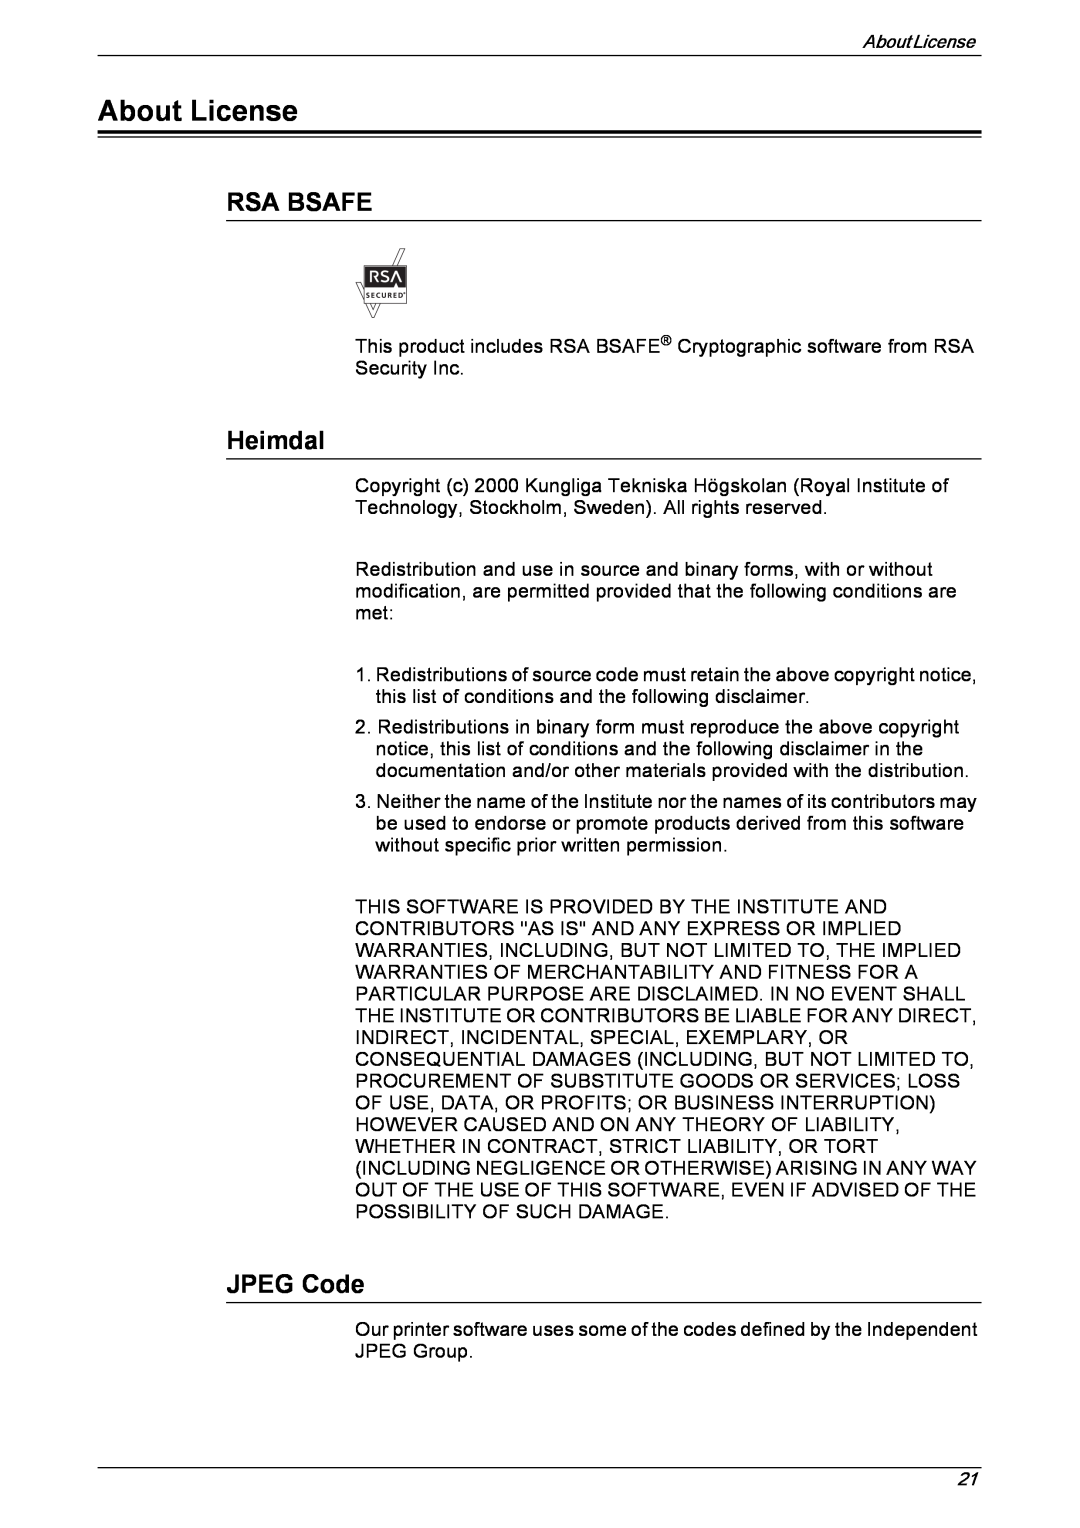 Xerox 5230 manual About License, Rsa Bsafe, Heimdal, JPEG Code 